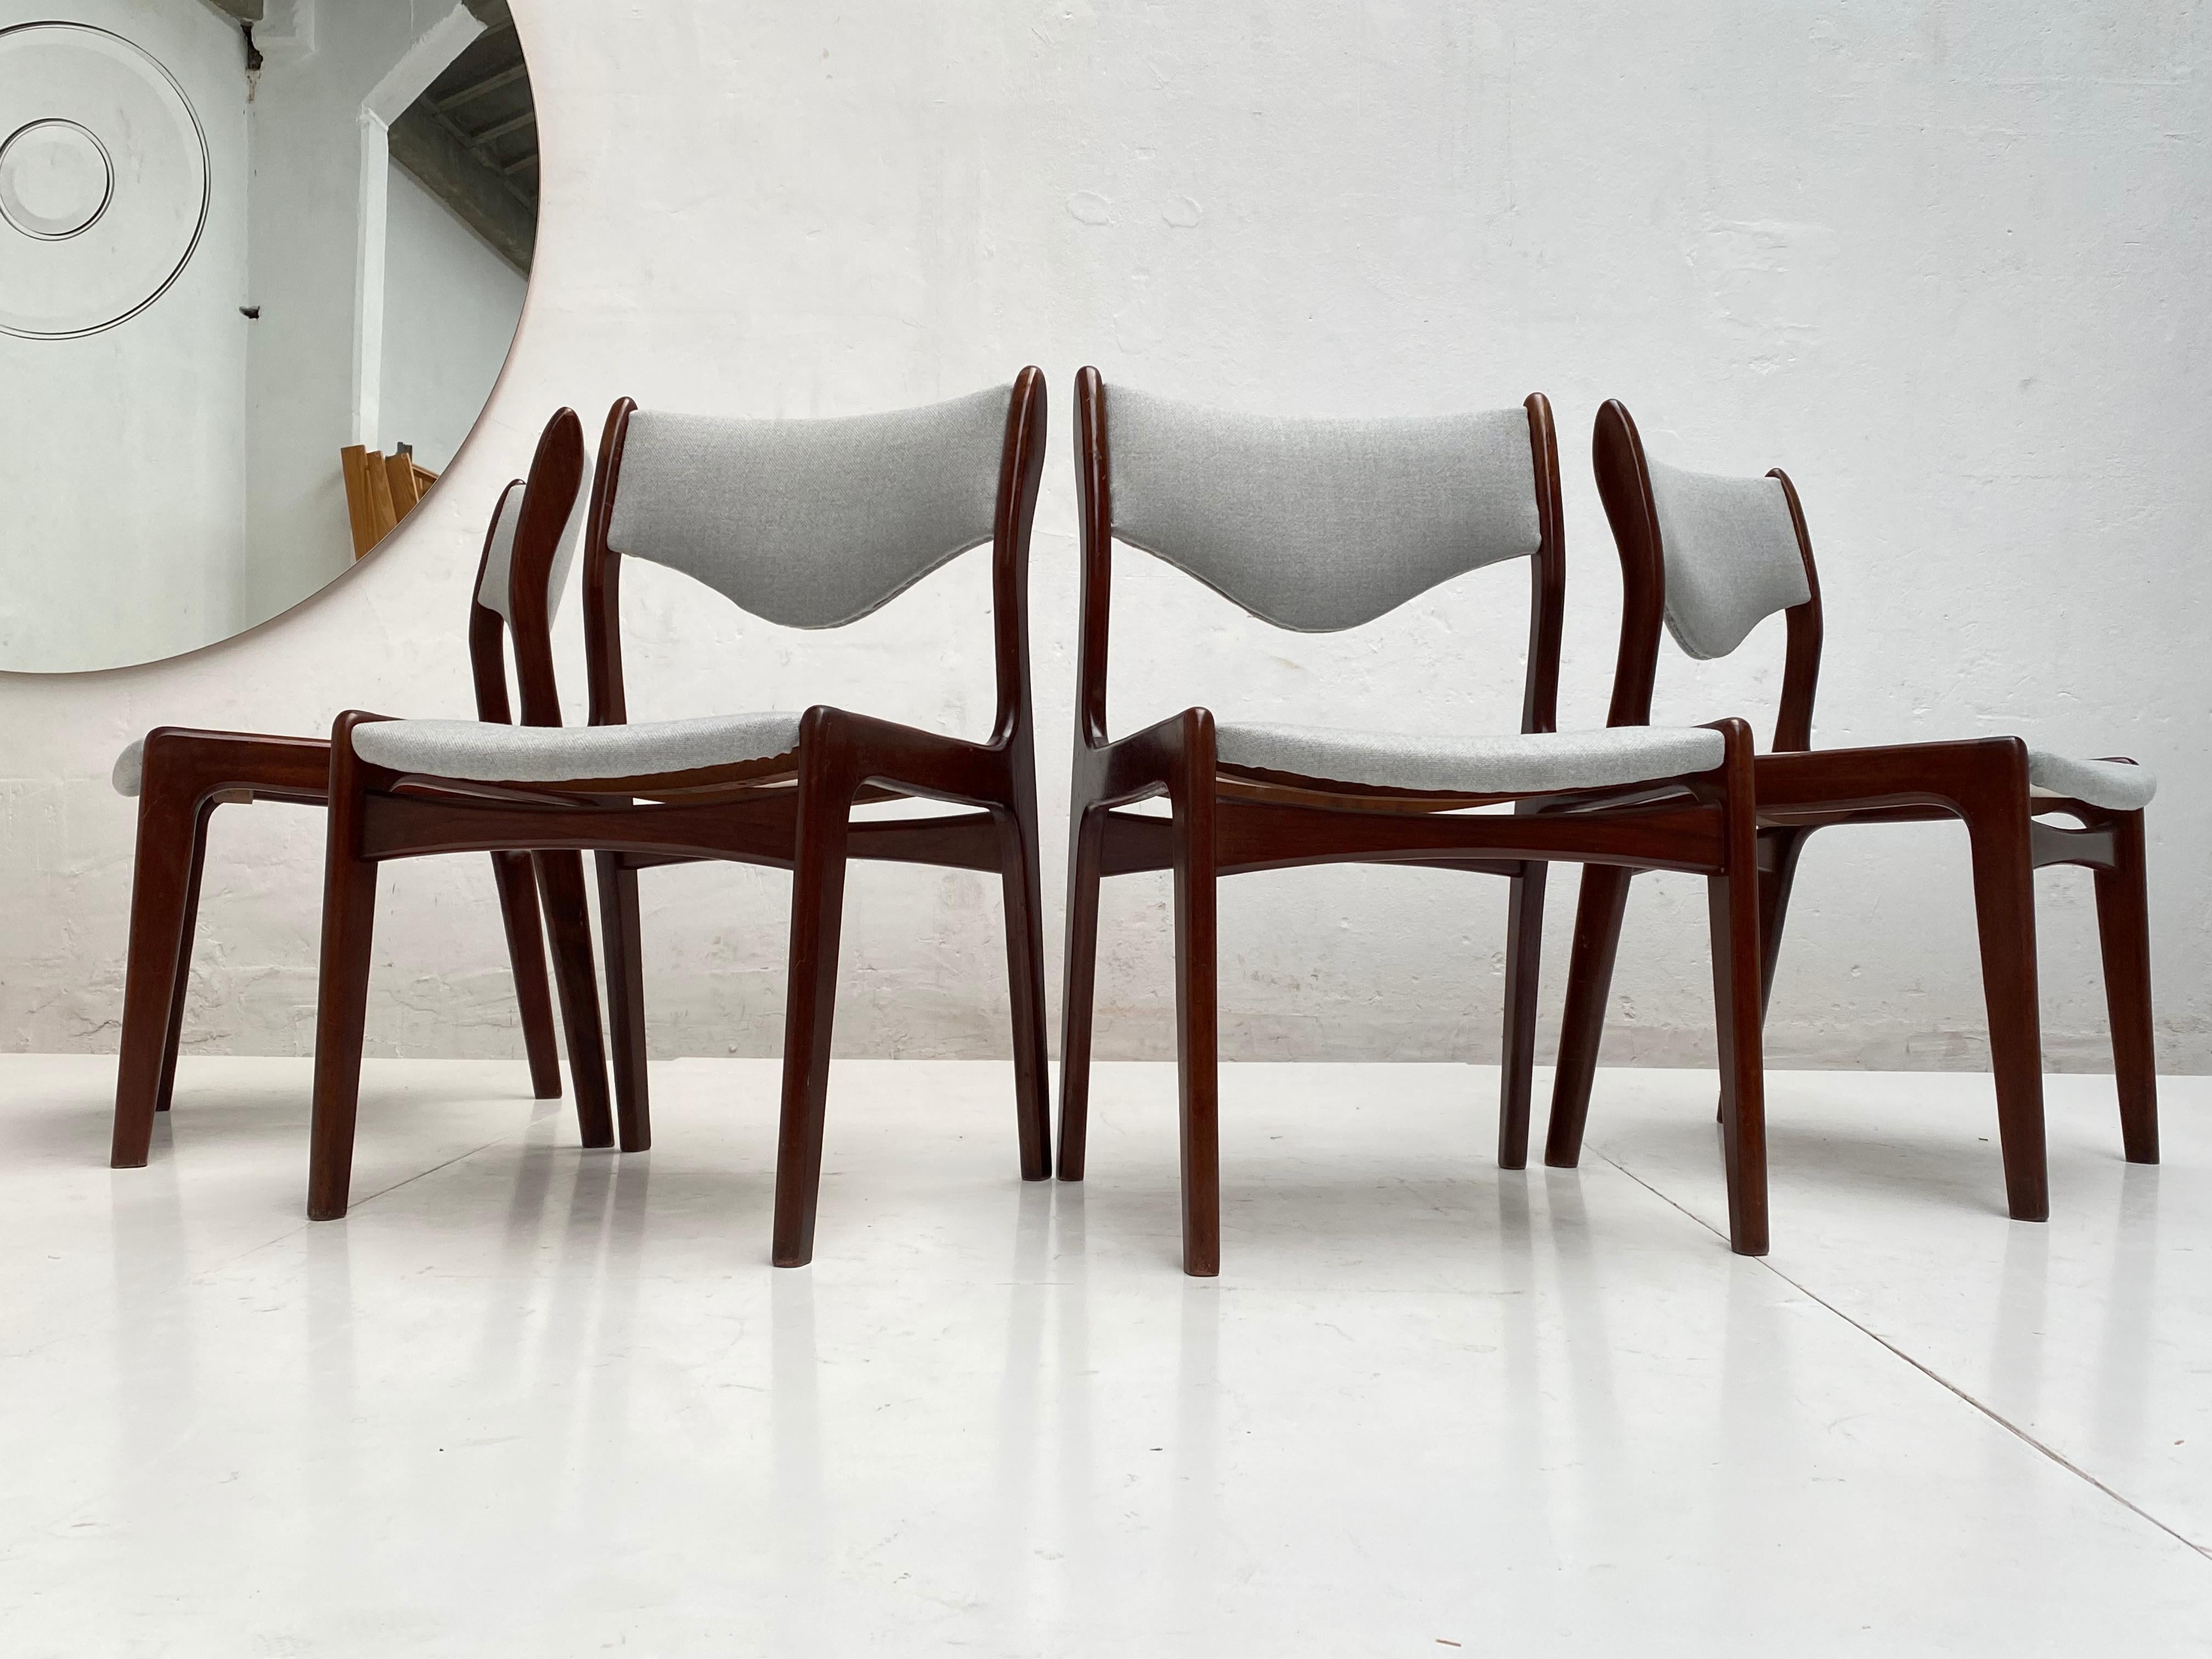 Diese hübschen, organisch geformten Esszimmerstühle sind ein Werk des dänischen Designers Johannes Andersen und wurden in den 1960er Jahren von der niederländischen Firma Mahjongg in Vlaardingen in den Niederlanden hergestellt

Die Stühle wurden